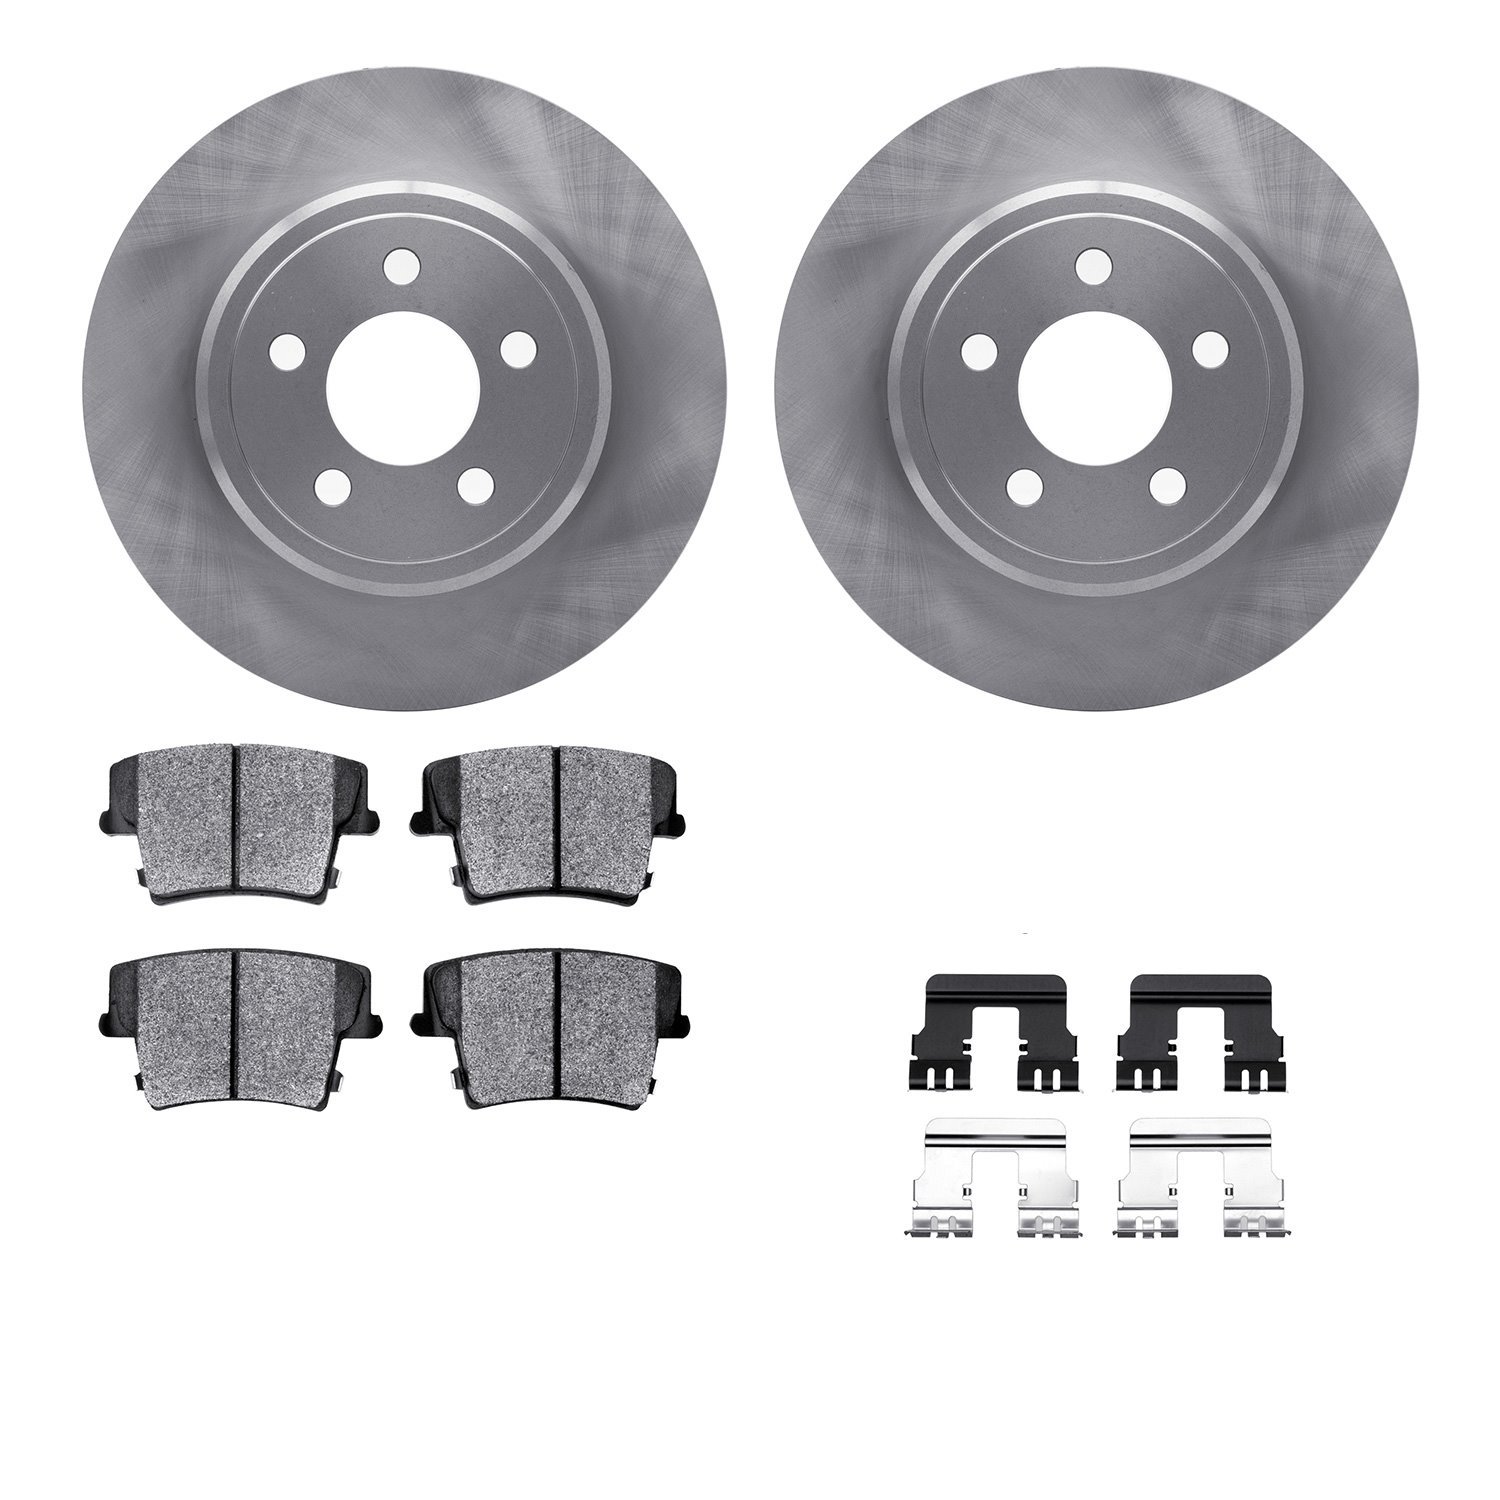 6212-39101 Brake Rotors w/Heavy-Duty Brake Pads Kit & Hardware, Fits Select Mopar, Position: Rear